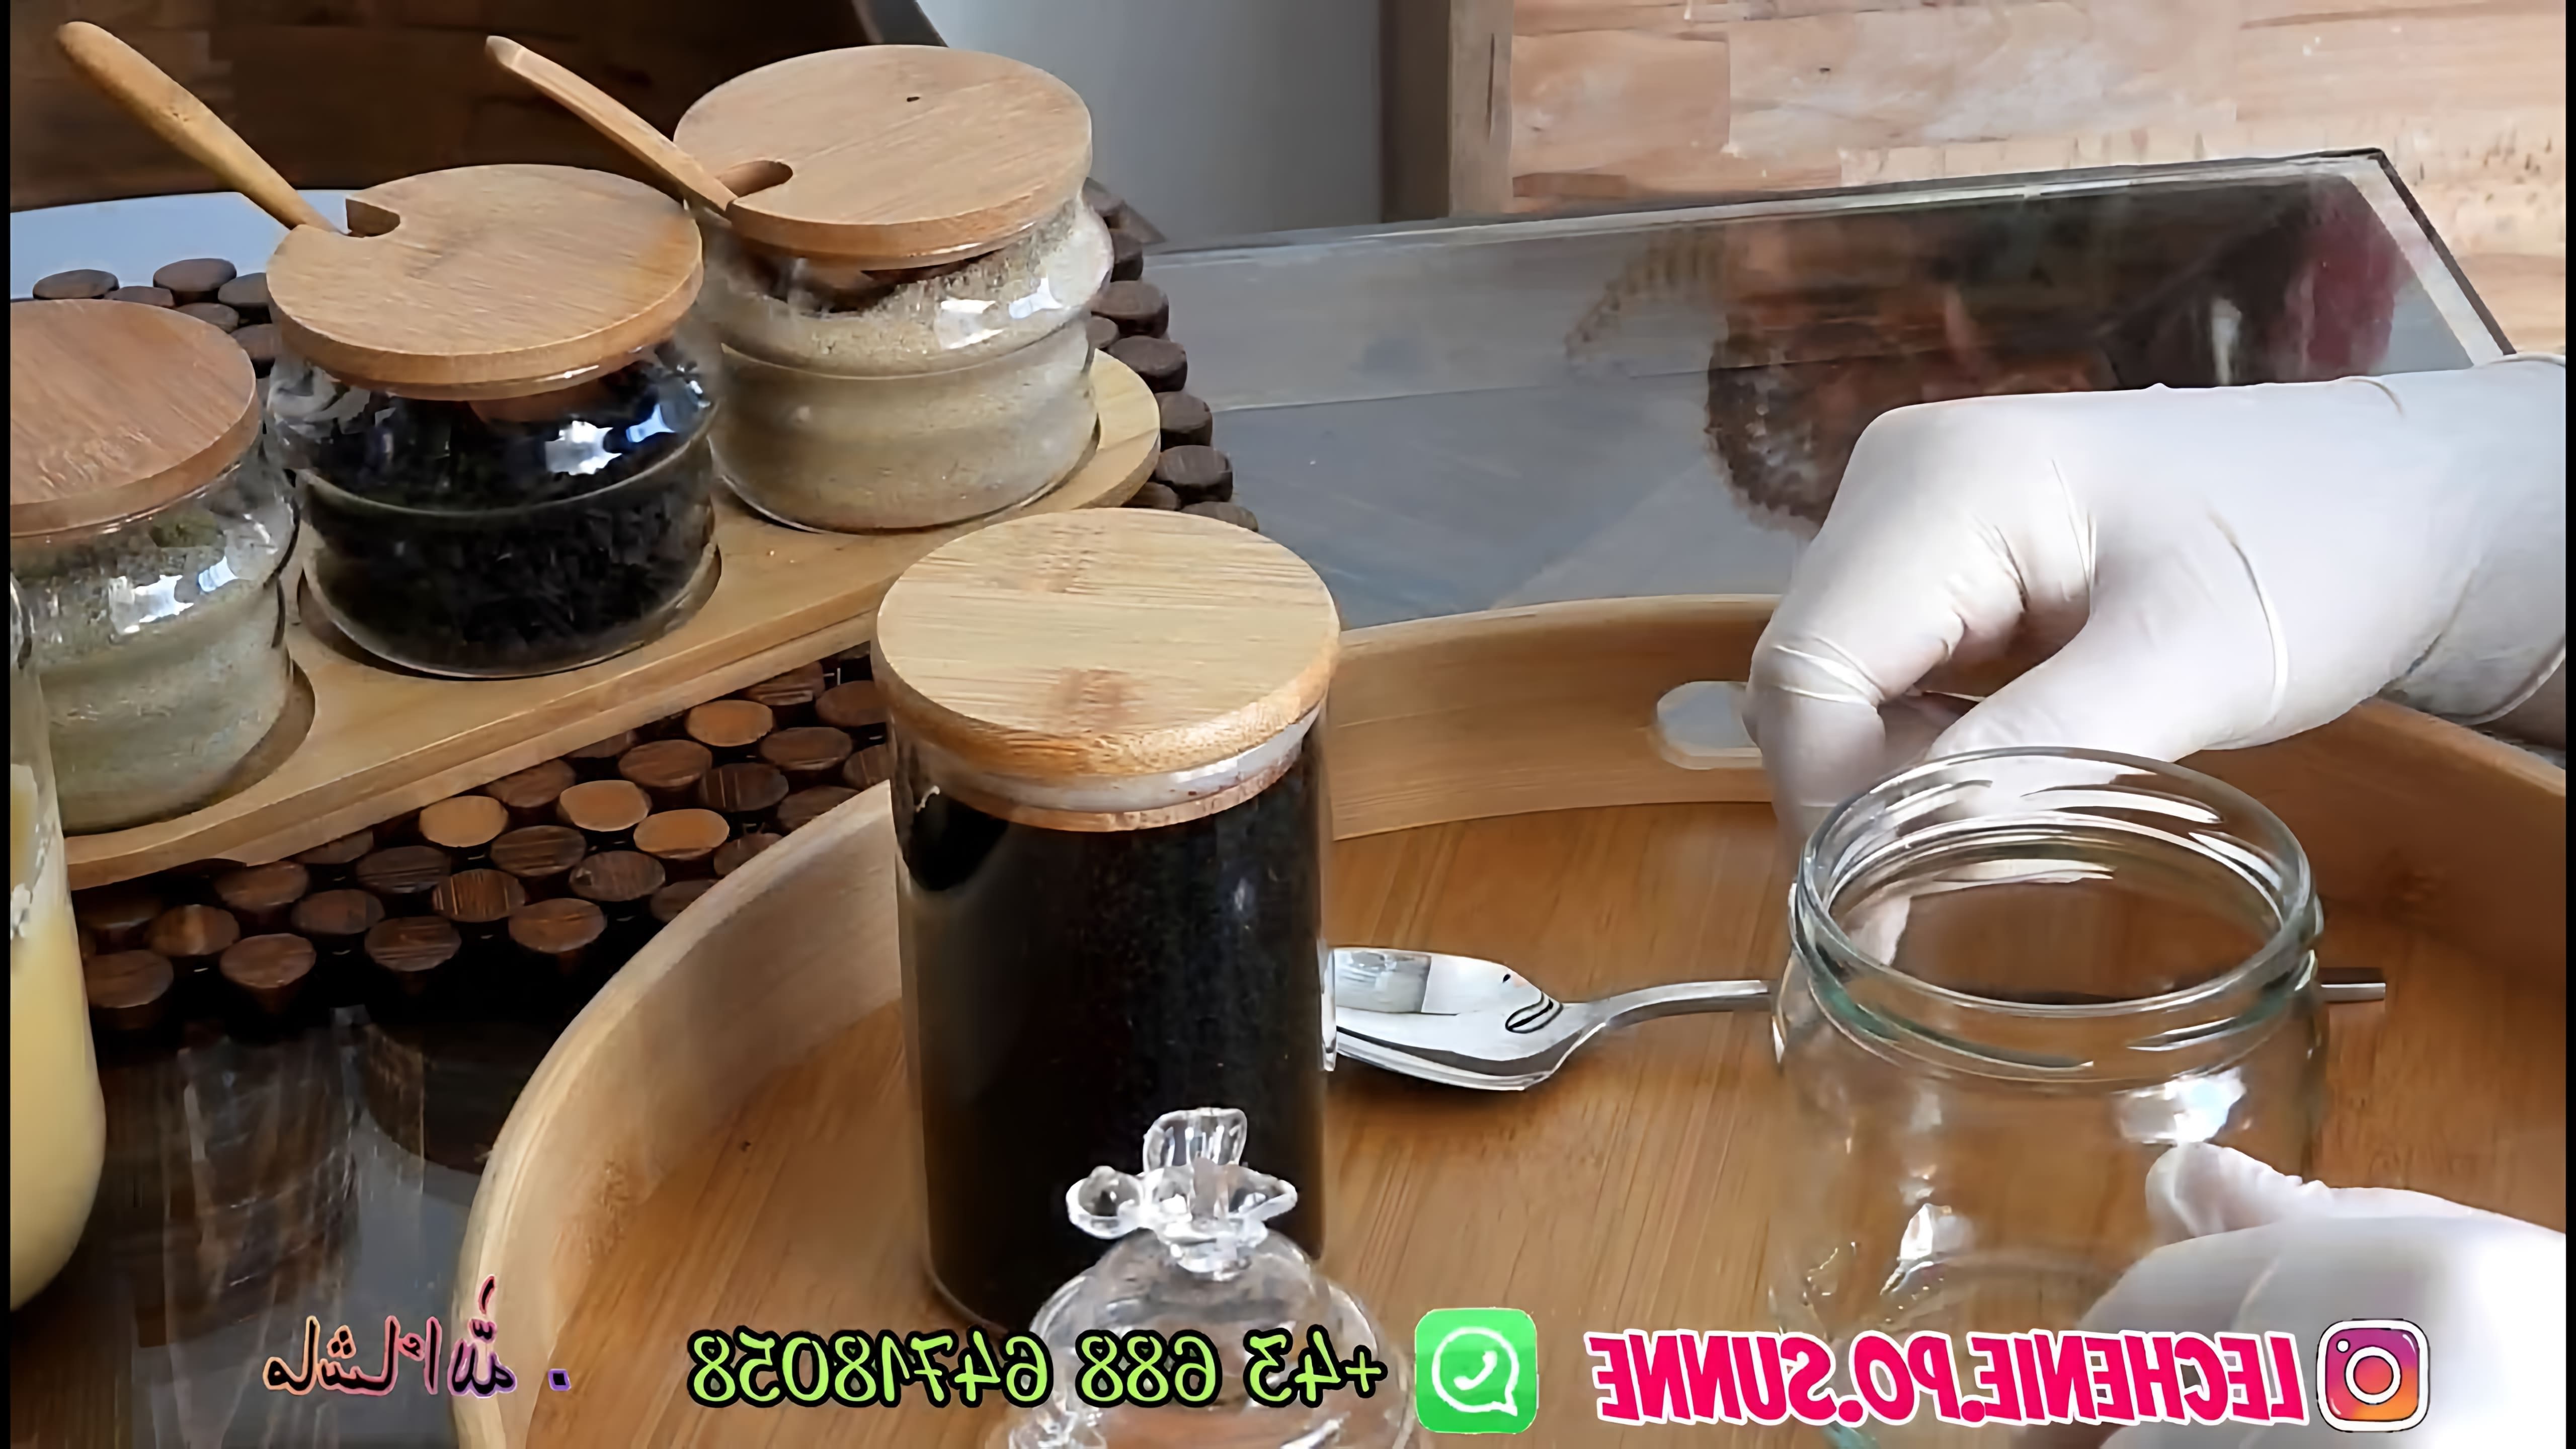 В этом видео-ролике демонстрируется рецепт приготовления чёрного тмина с медом